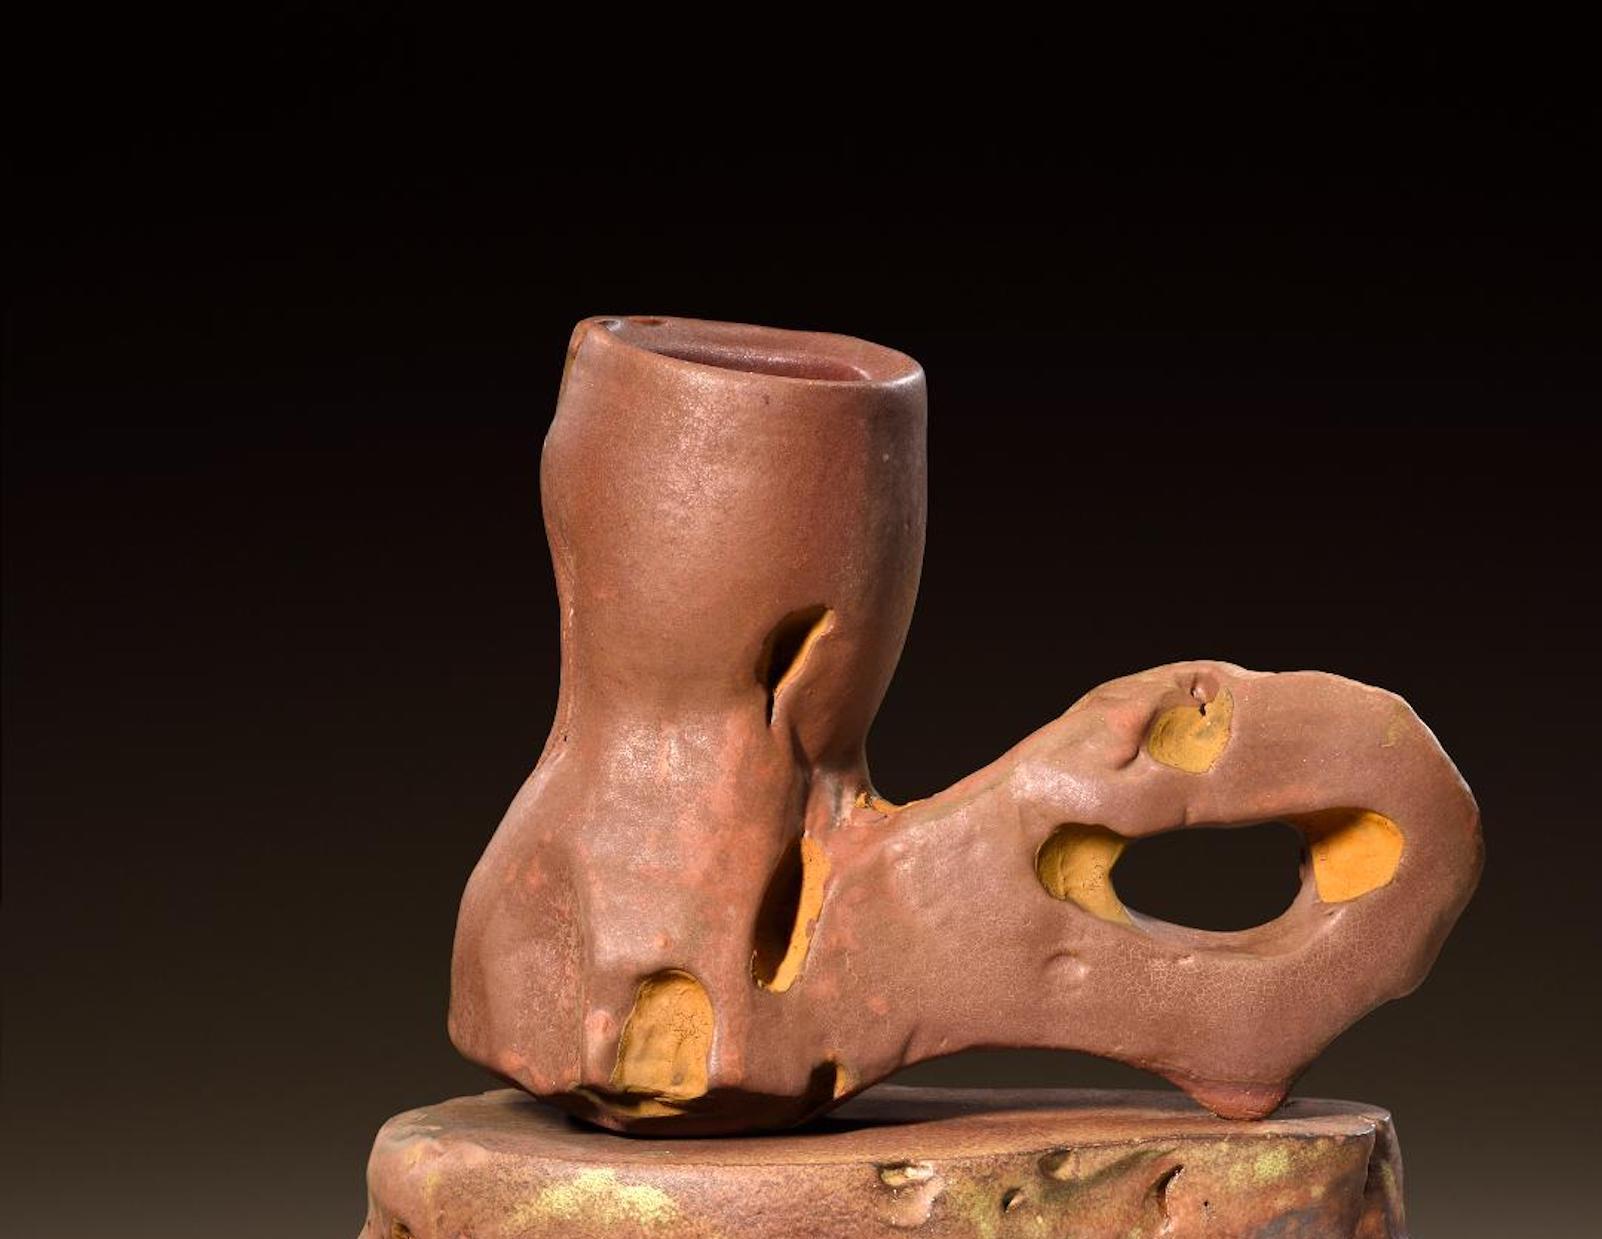 Modern Richard Hirsch Ceramic Scholar Rock Cup Sculpture #51, 2018 For Sale